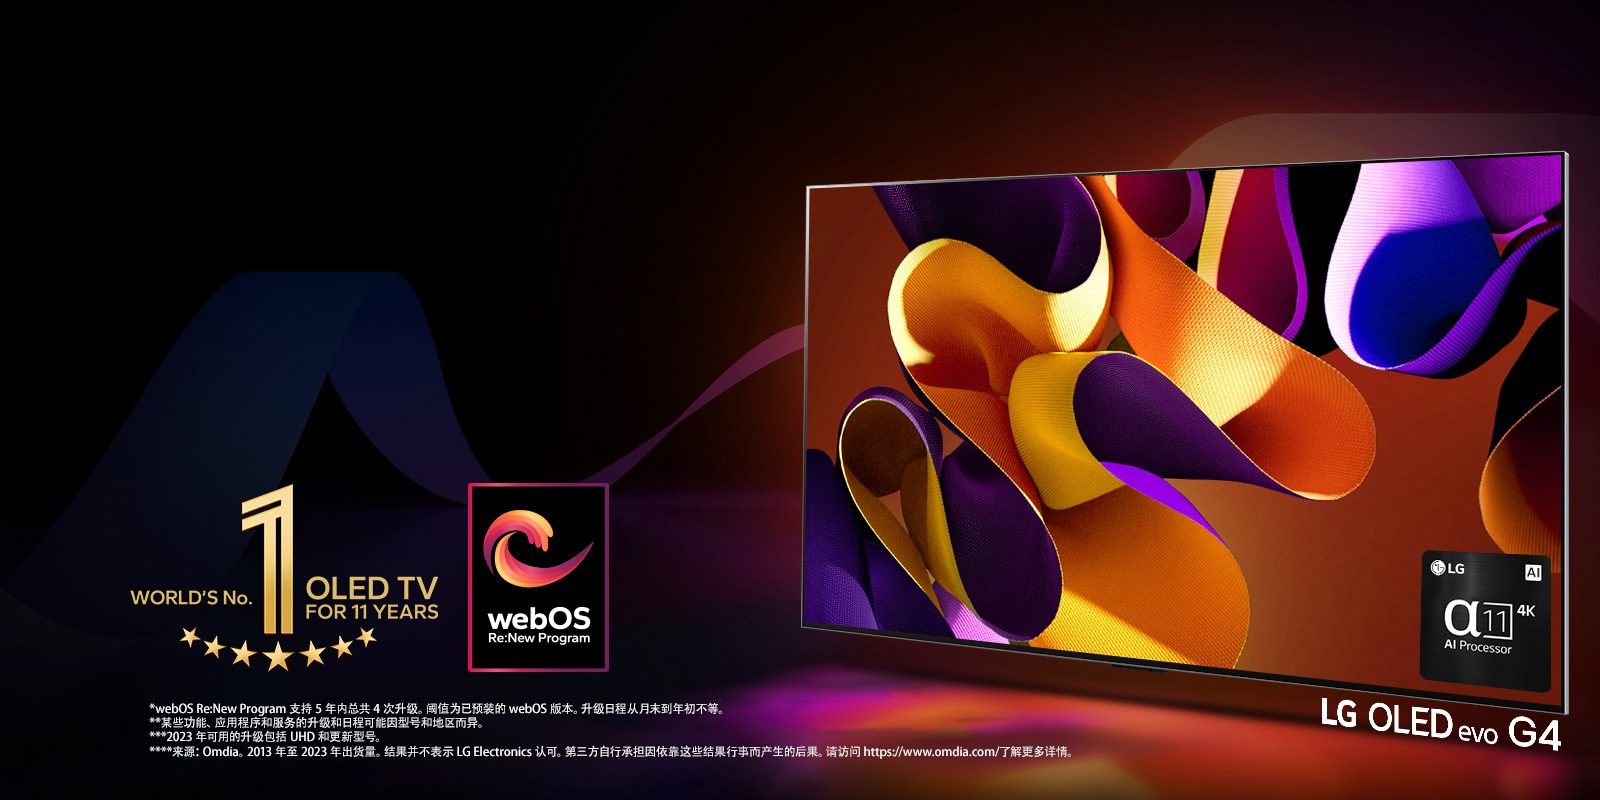 LG OLED evo TV G4 屏幕上显示抽象的彩色艺术作品，以黑色和多彩旋涡艺术作品为背景。光线从屏幕散射开来，投下五颜六色的阴影。电视屏幕的右下角有 alpha 11 AI Processor 4K。图像中有“连续 11 年全球最佳 OLED TV”标志和“webOS Re:New 程序”徽标。 免责声明内容为：“webOS Re:New Program 支持 5 年内总共 4 次升级。阈值为已预装的 webOS 版本。升级日程从月末到年初不等。”  “某些功能、应用程序和服务的升级和日程可能因型号和地区而异。”  “2023 年可用的升级包括 UHD 和更新型号。” “来源：Omdia。2013 年至 2023 年出货量。结果并不表示 LG Electronics 认可。第三方自行承担因依靠这些结果行事而产生的后果。请访问 https://www.omdia.com/ 了解更多详情。”